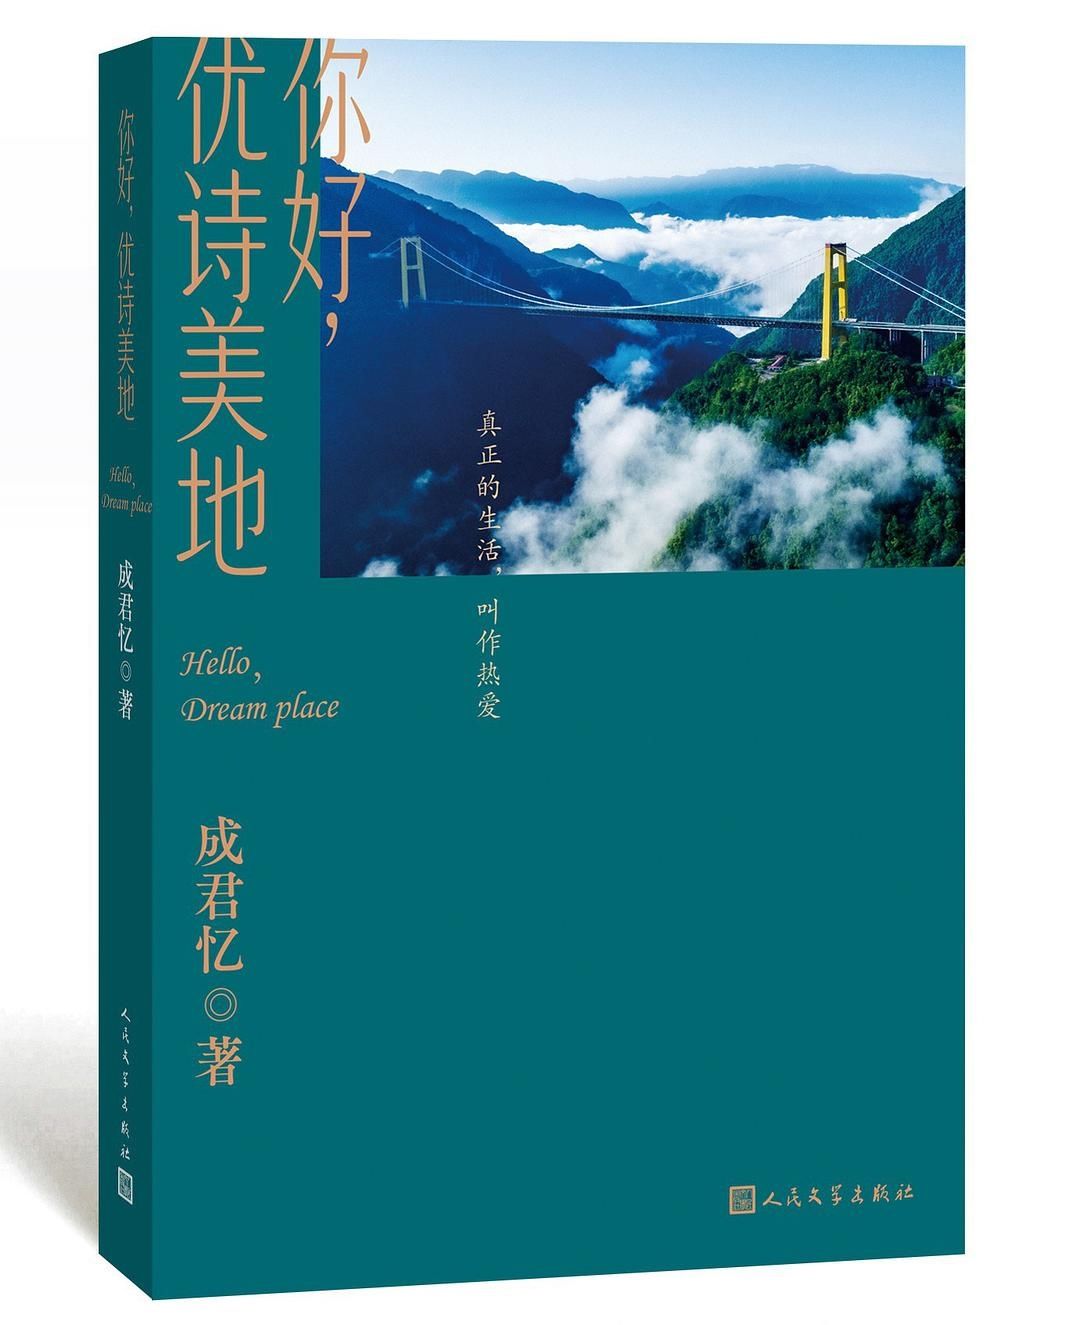 《你好，优诗美地》研讨会在武汉举行，武汉作协会员新书帮扶恩施，为乡村振兴助力